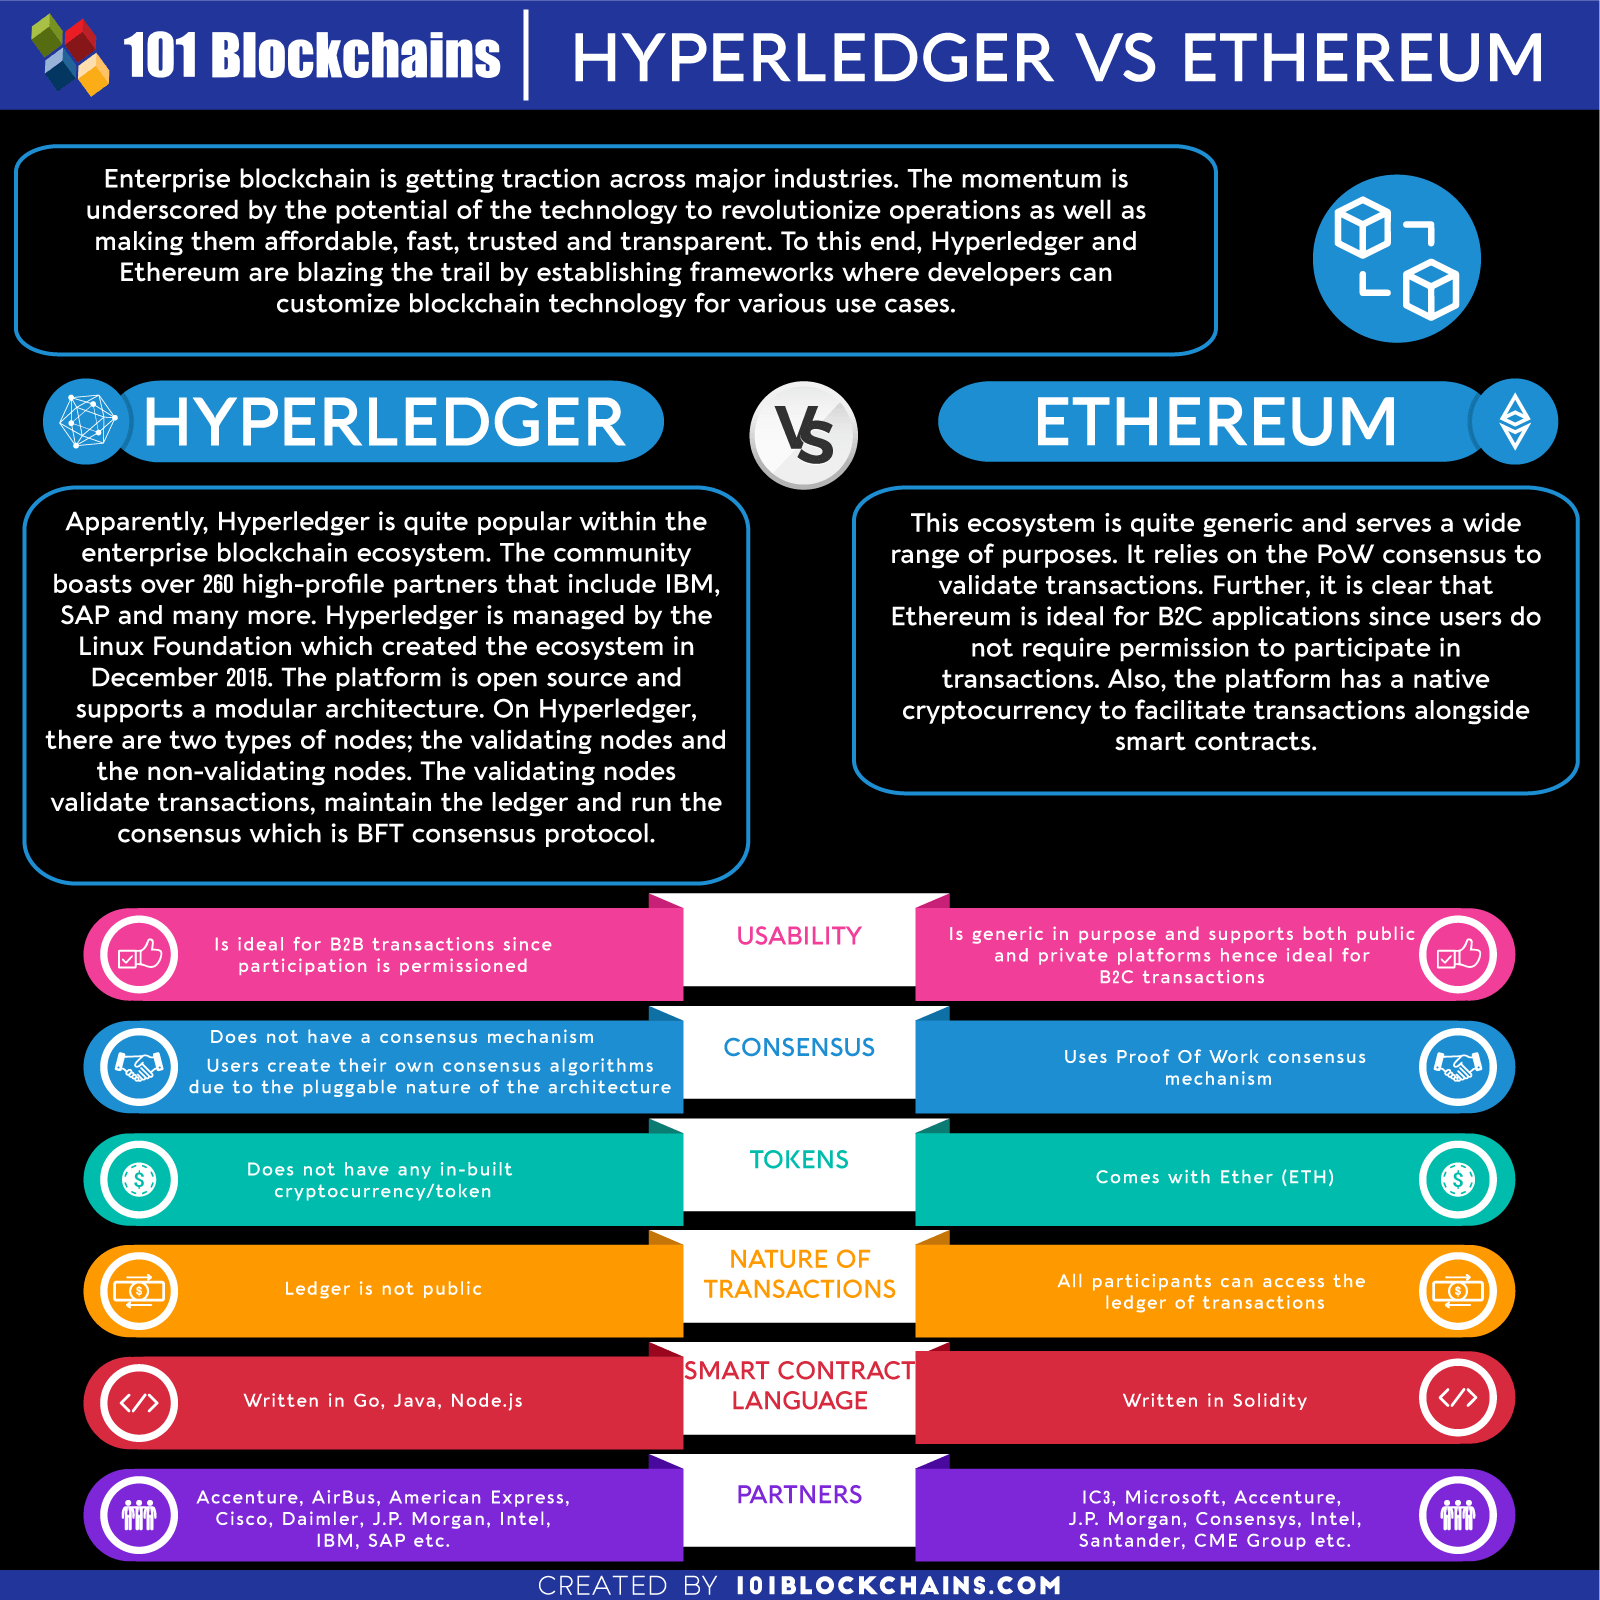 ethereum vs hyperledger vs ripple